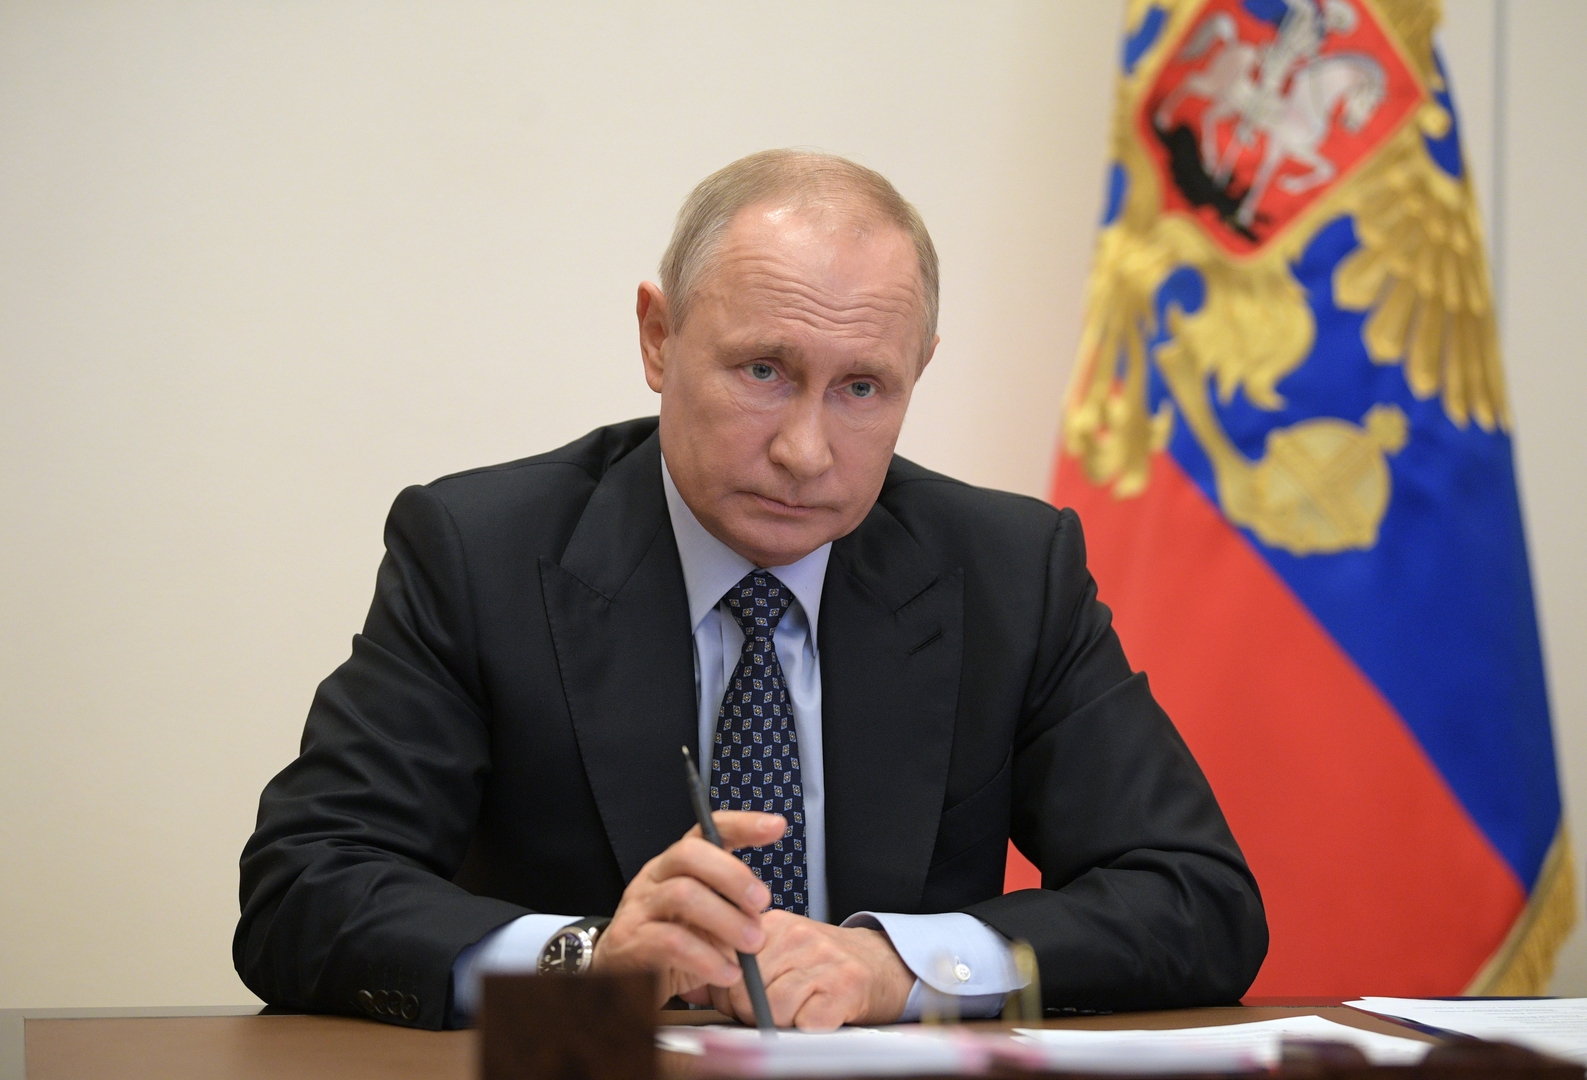 بوتين يدعو لعدم الاستعجال في رفع القيود المفروضة في روسيا بسبب فيروس كورونا